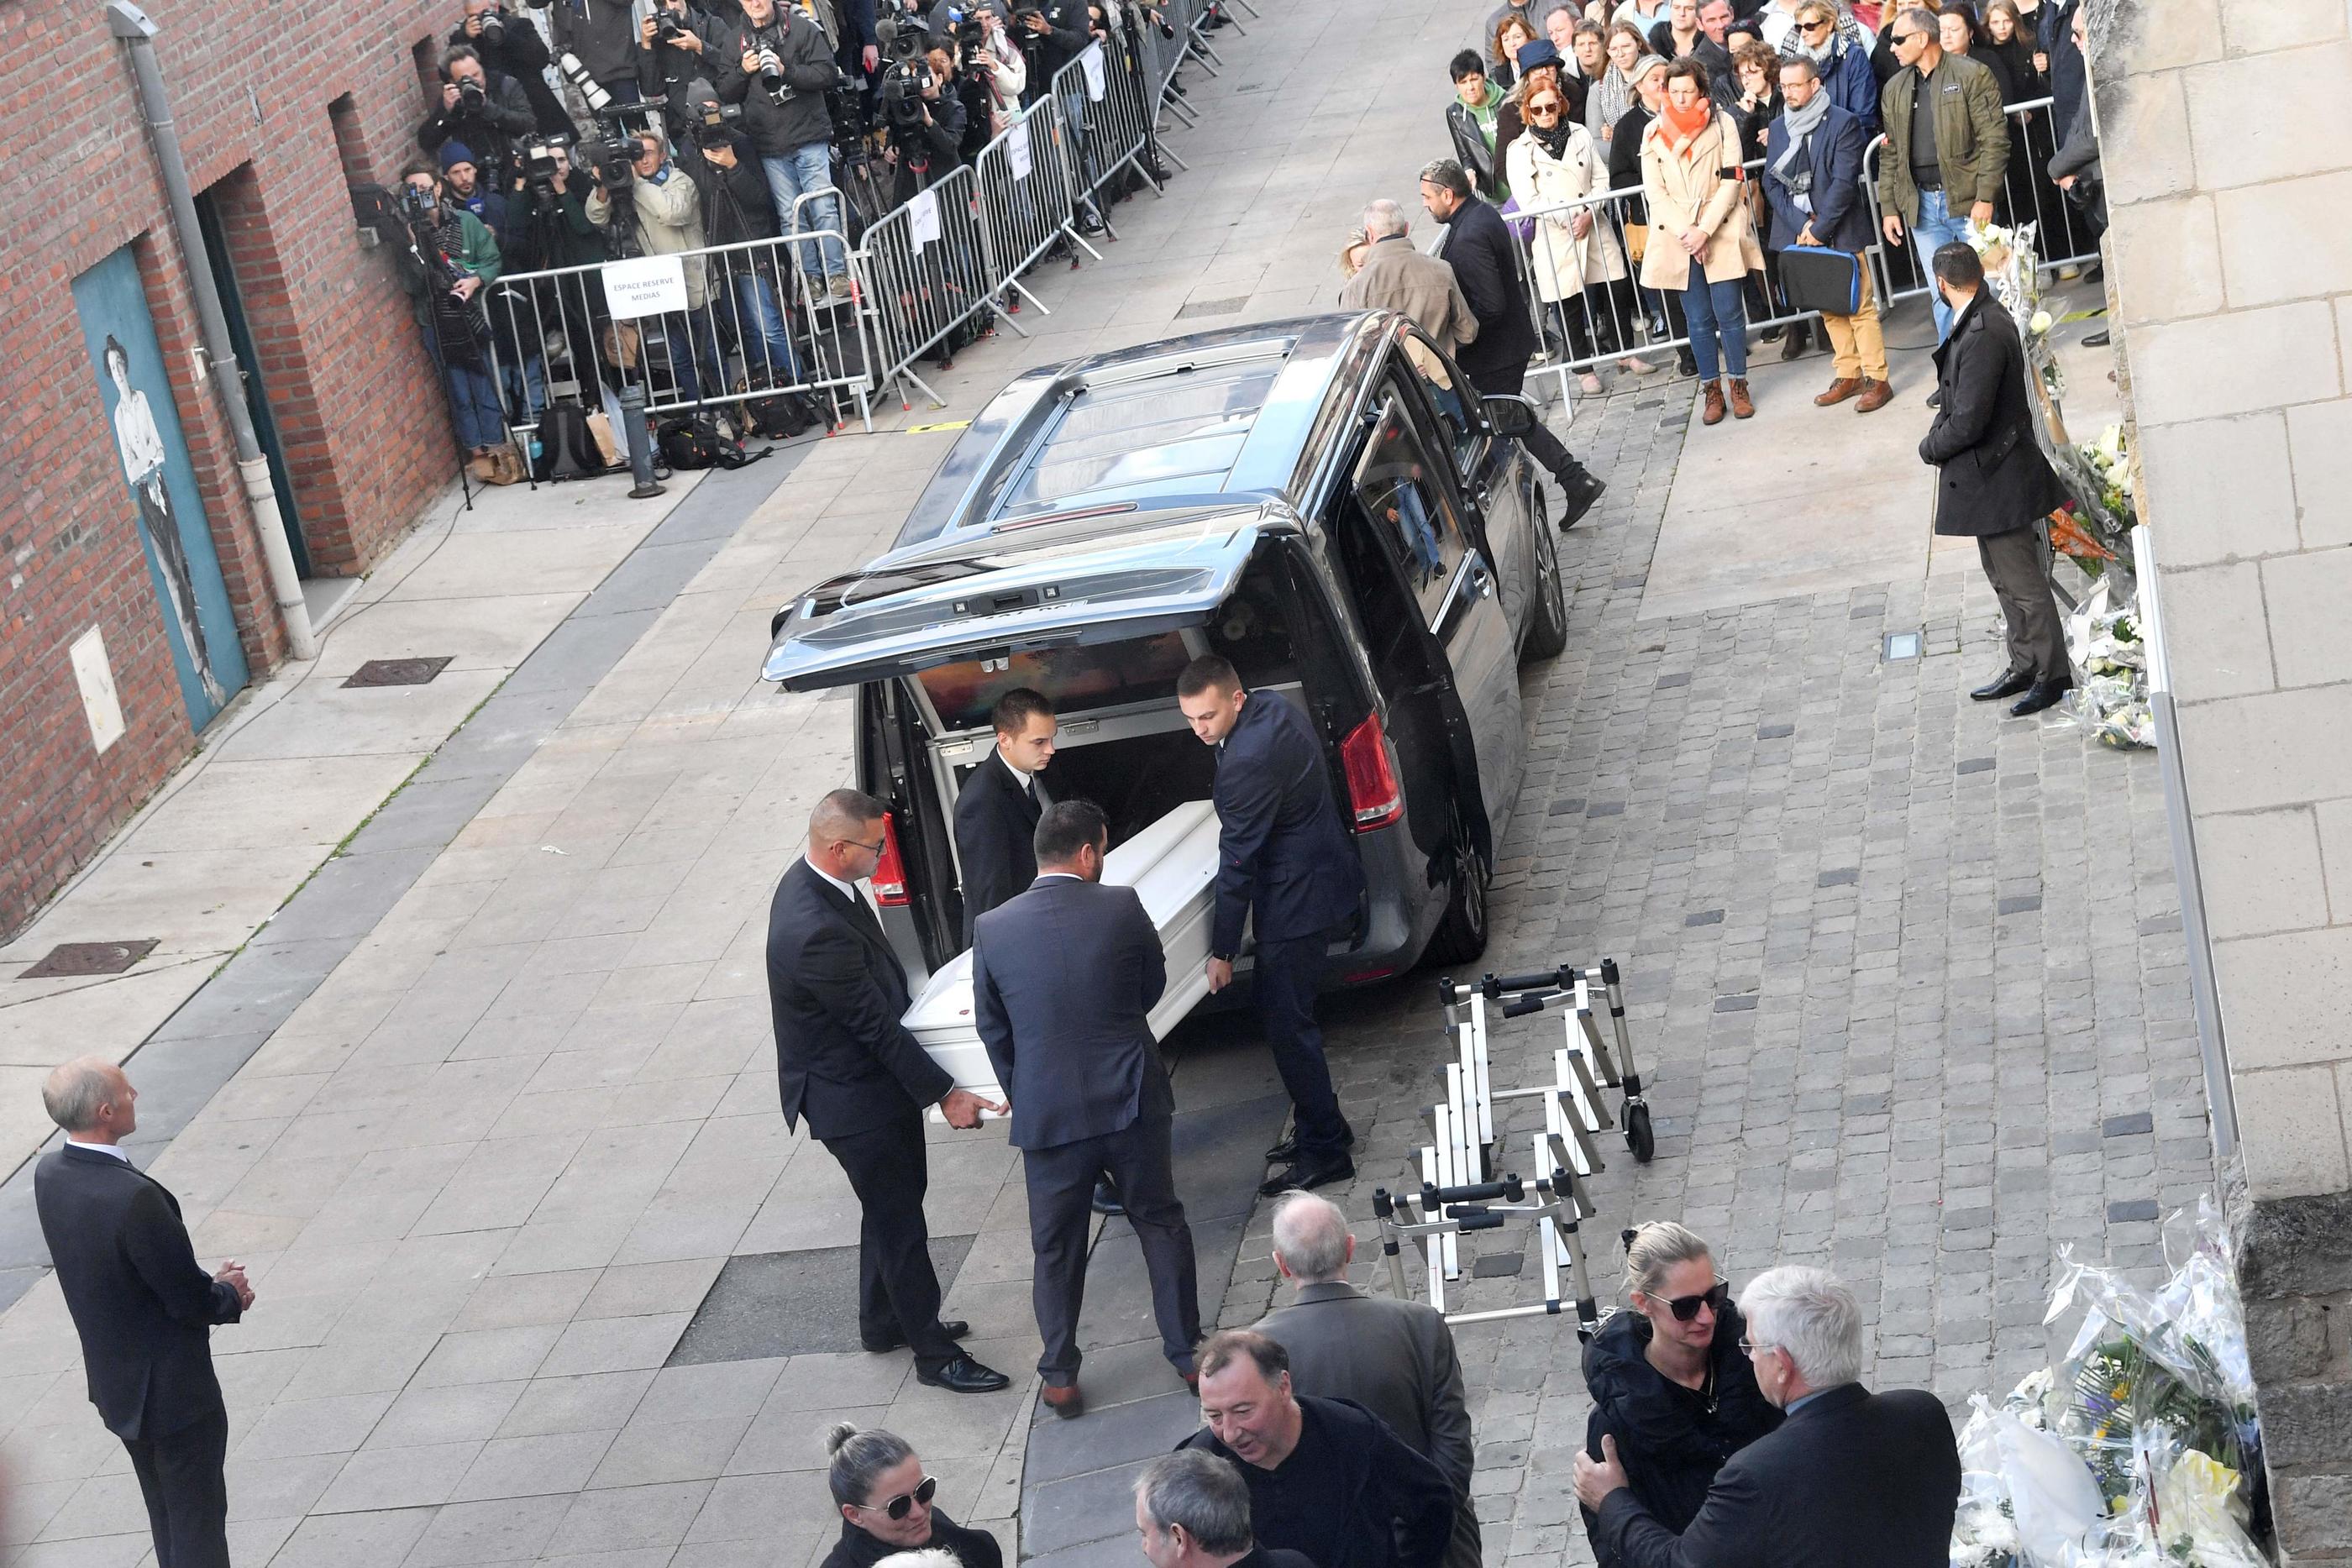 Le cercueil de Lola arrivant à la collégiale de Lillers (Pas-de-Calais) pour les funérailles de la petite fille, ce lundi après-midi. AFP/FRANCOIS LO PRESTI